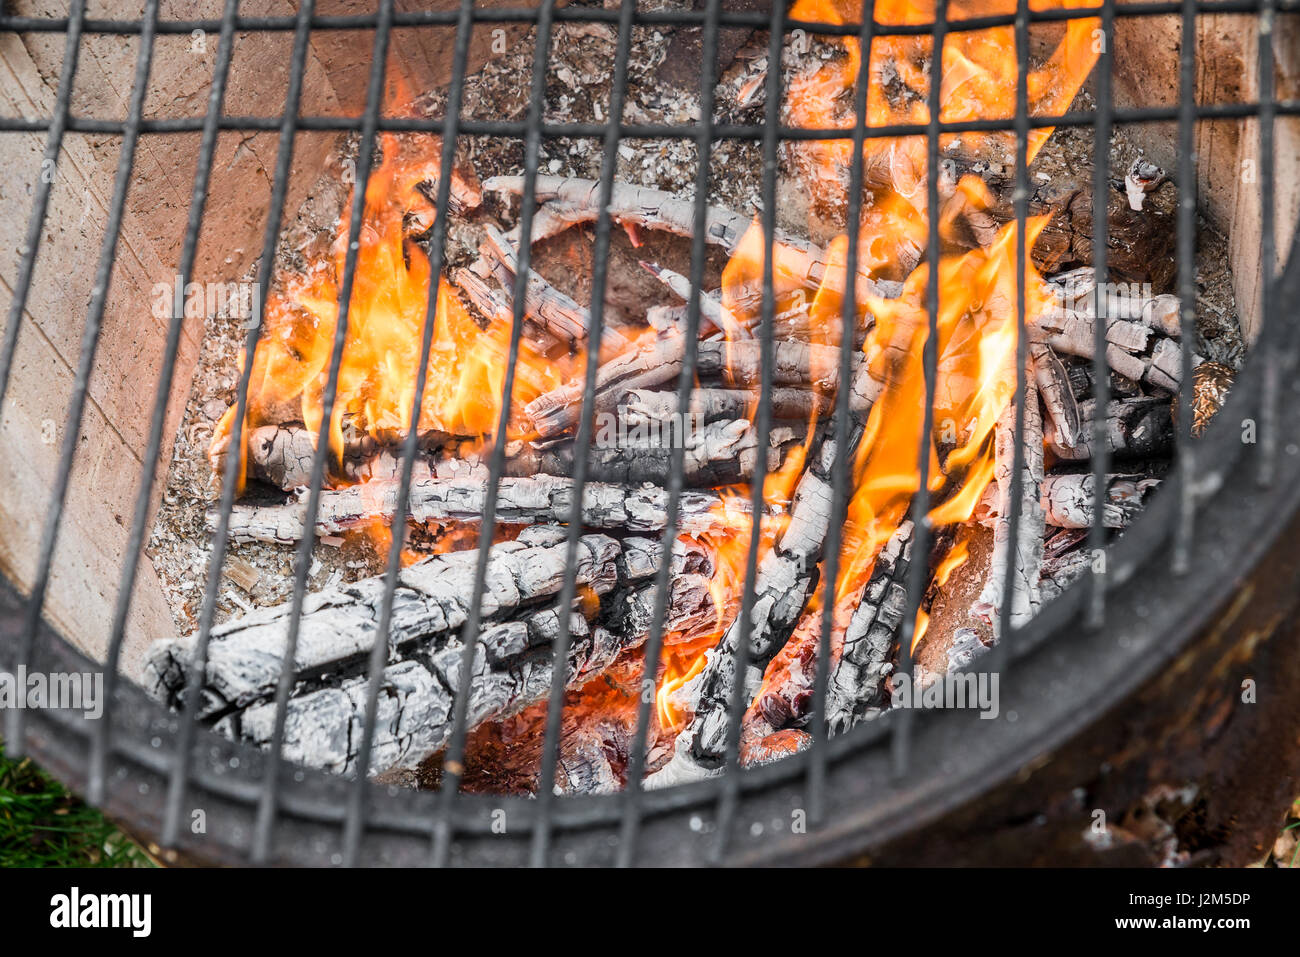 Grille de cuisson à une ancienne caserne pot avec un feu brûlant Banque D'Images